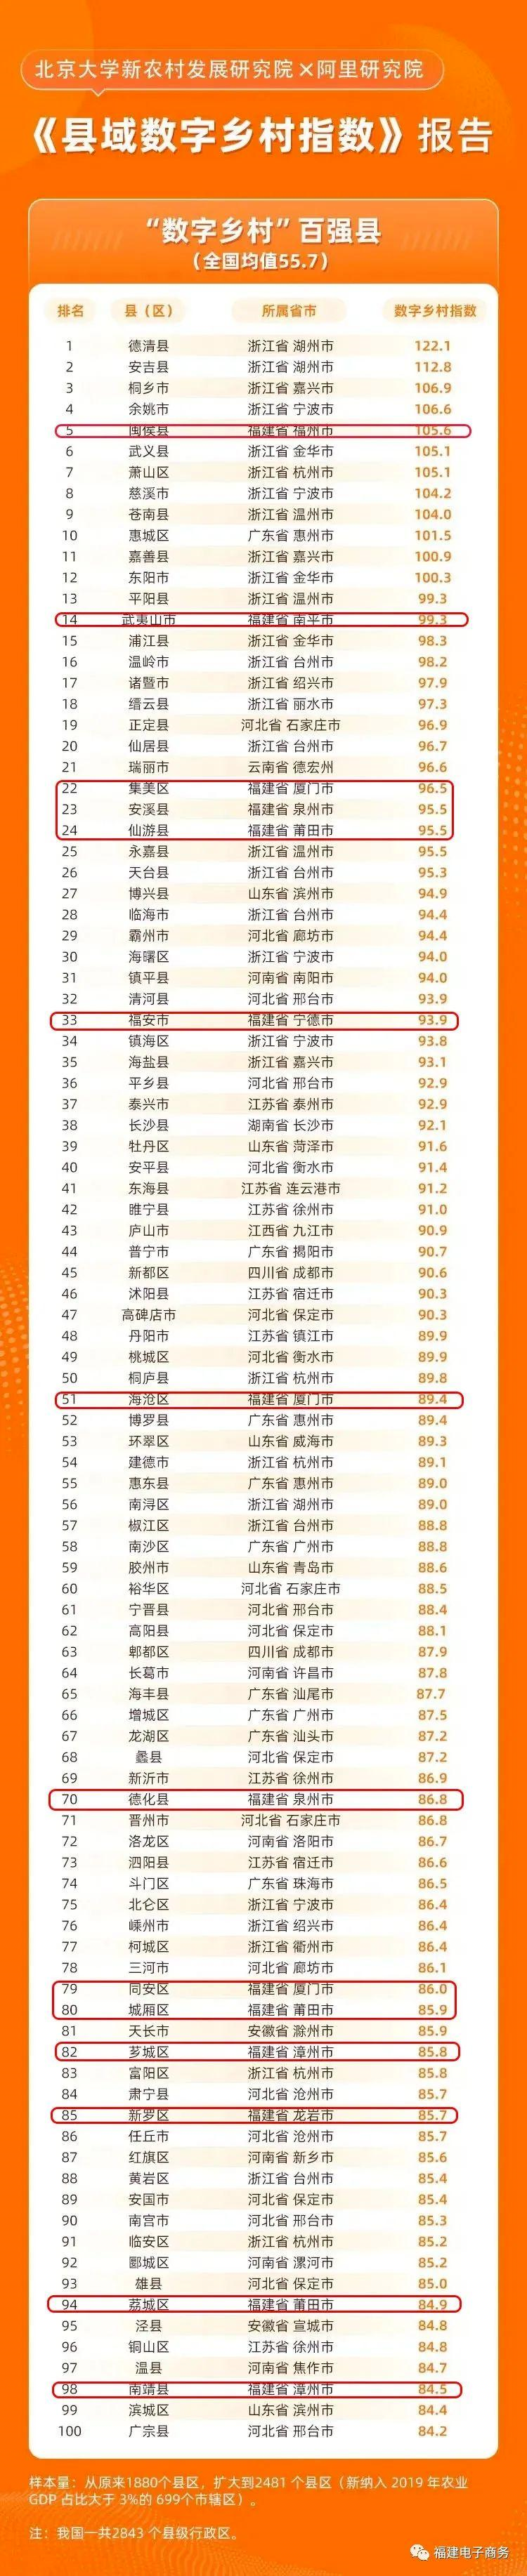 福建县域数字乡村发展水平排名全国第3位